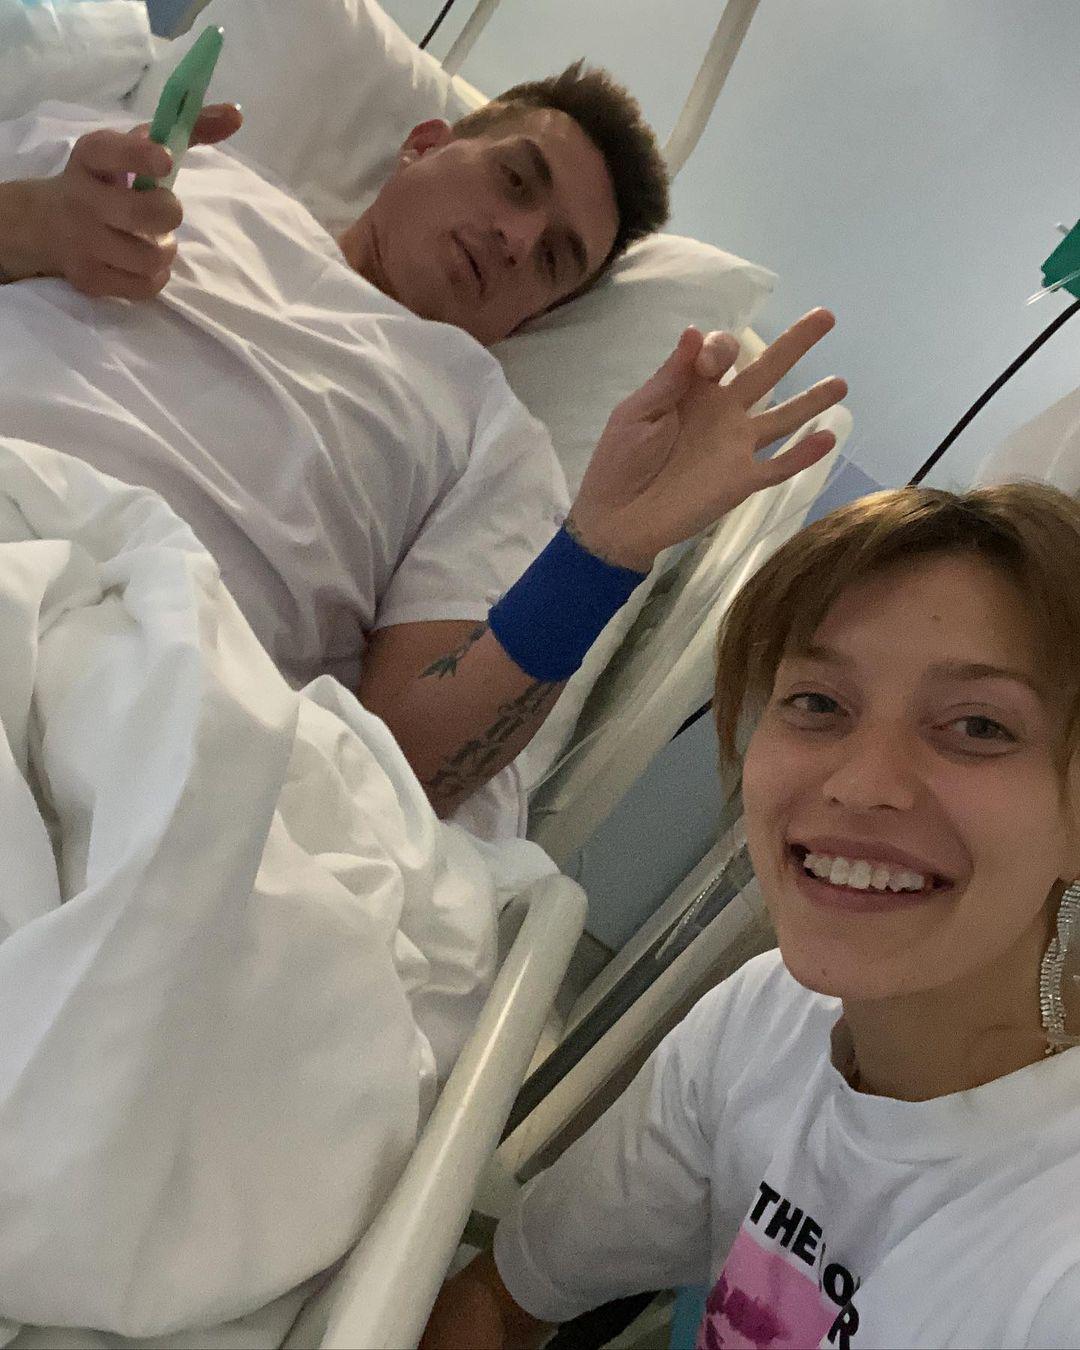 Регина Тодоренко и Влад Топалов в больнице. Источник: ----аккаунт Регины Тодоренко